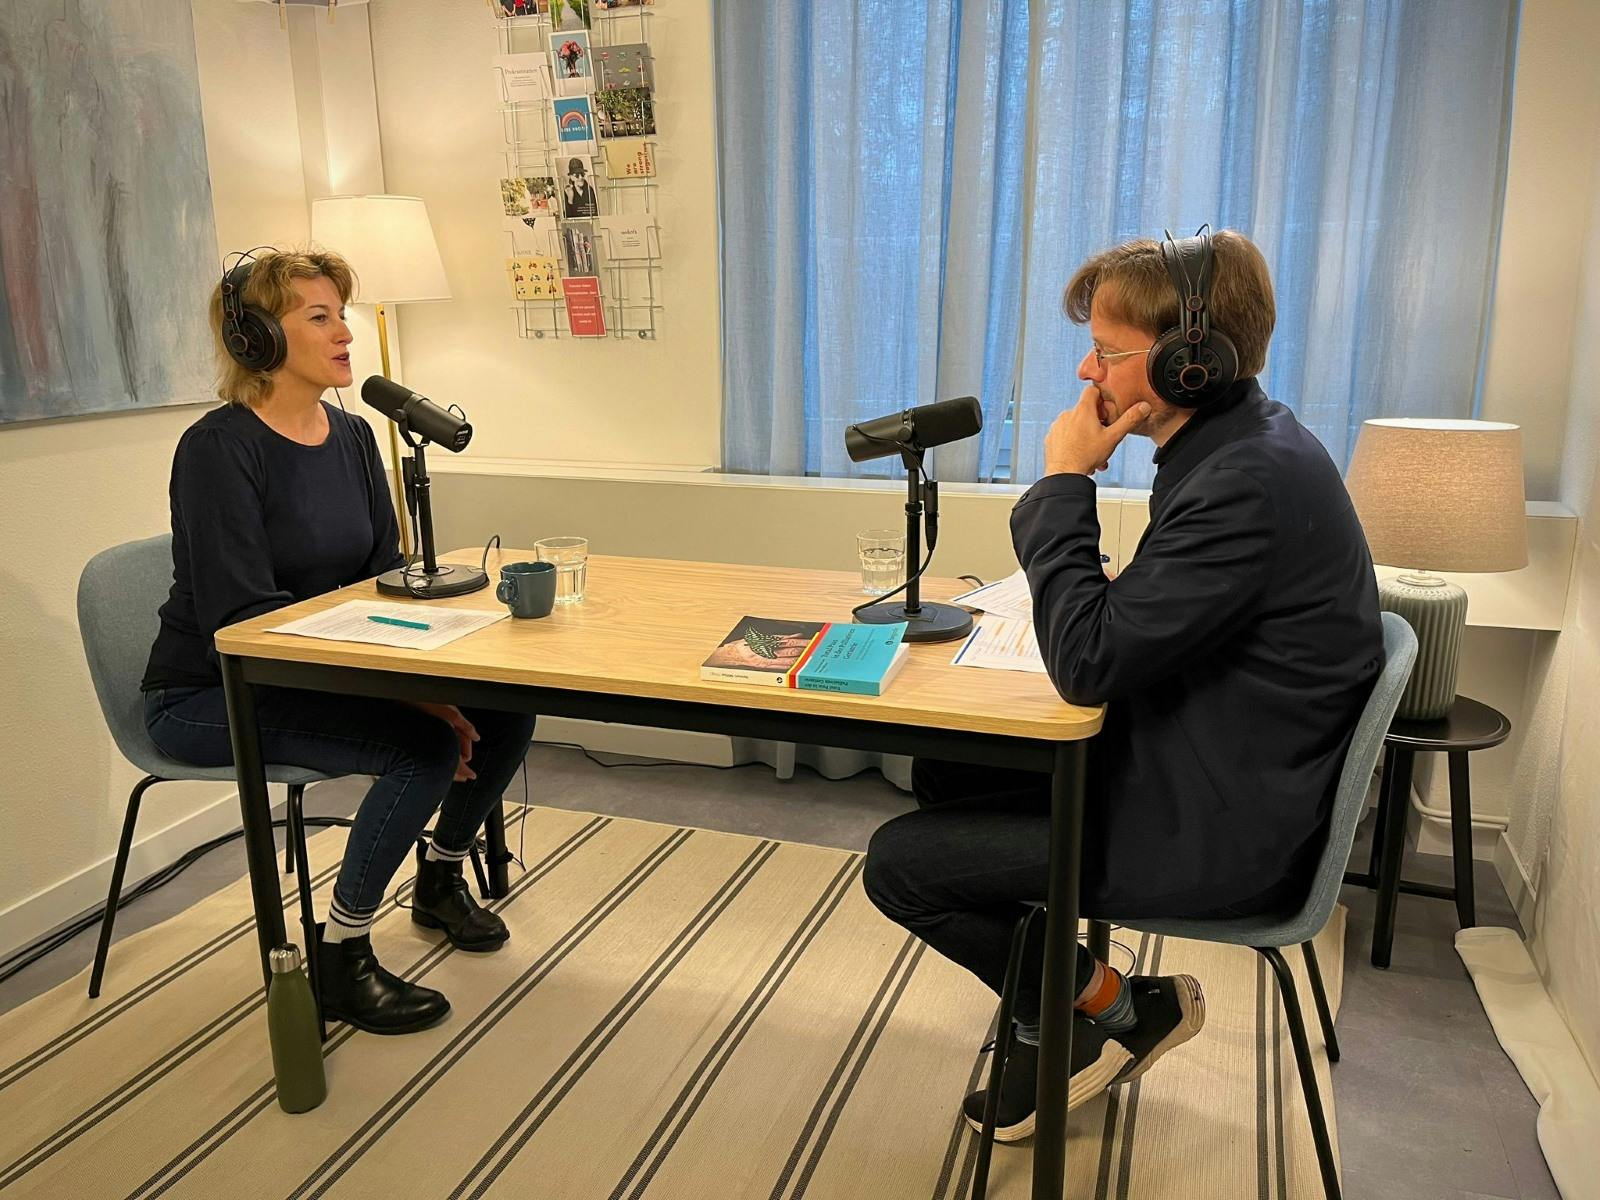 Zwei Personen führen ein Gespräch bei einer Podcast-Aufnahme in einem hellen Raum.